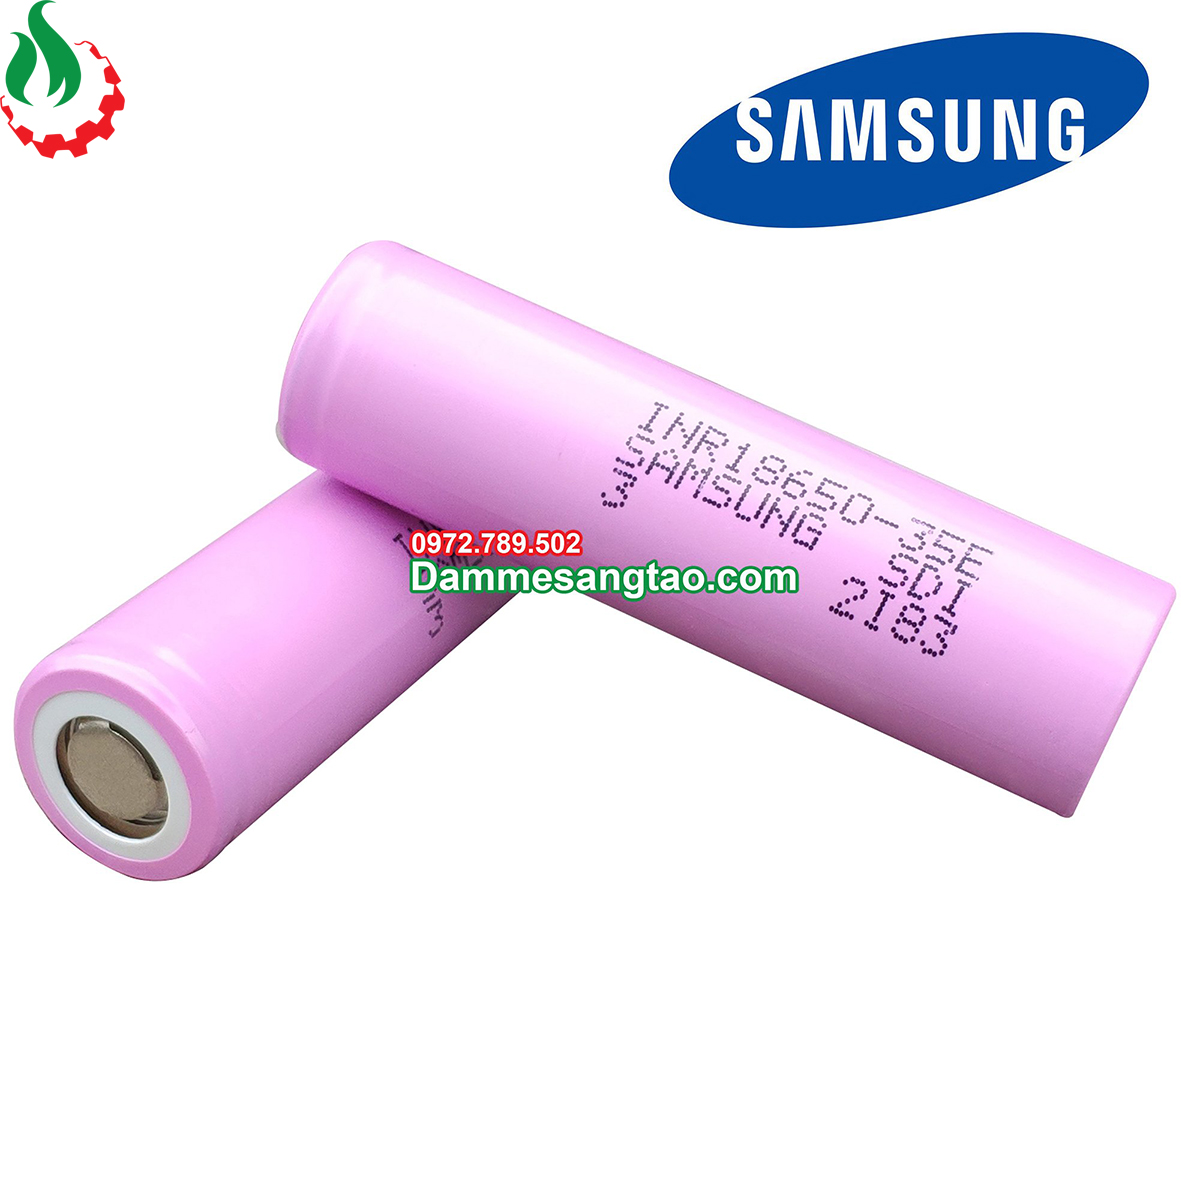 Cell pin 18650 Samsung INR 35E (Xả 8A)